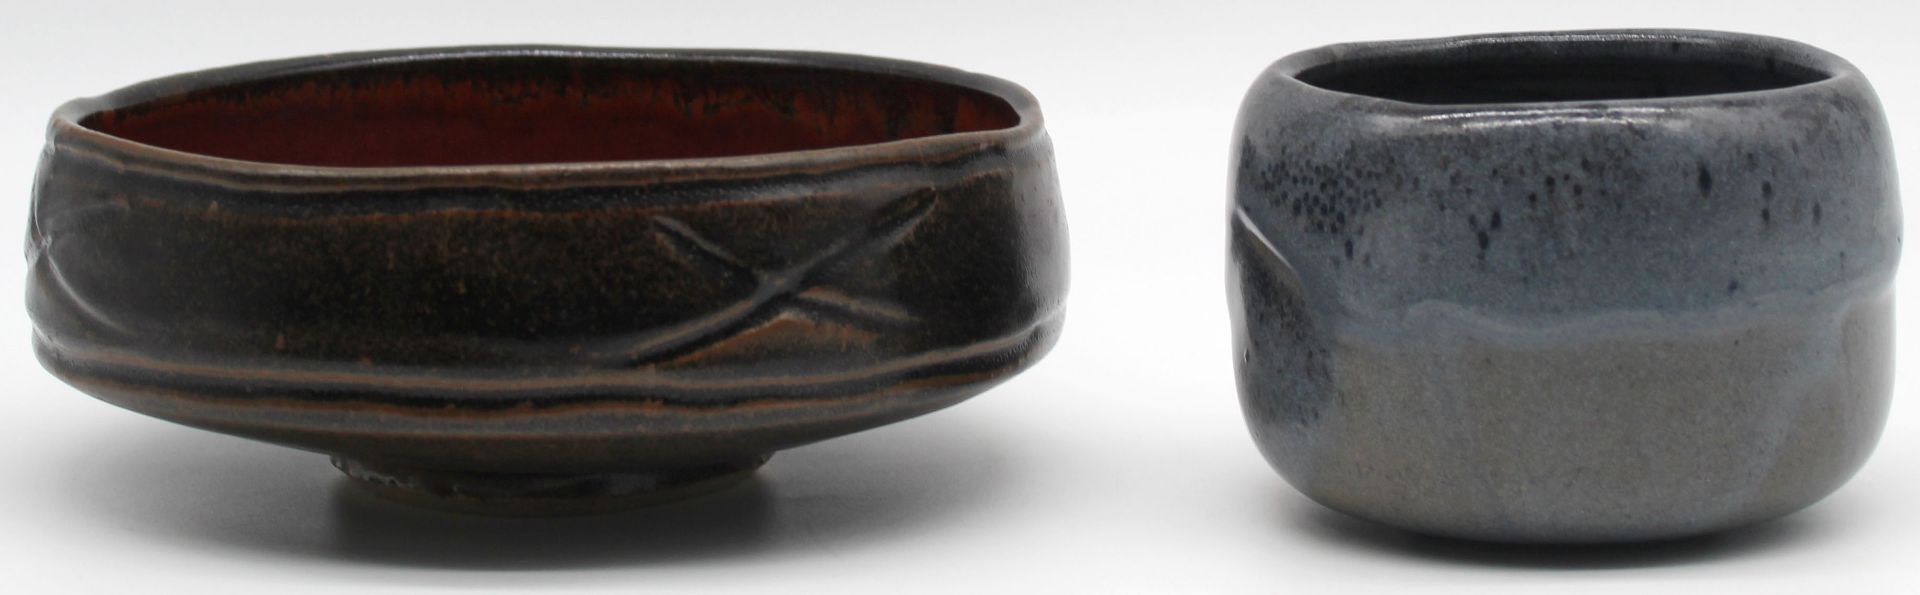 Horst KERSTAN (1941 - 2005). 3 objects stoneware / ceramic glazed. - Image 4 of 18